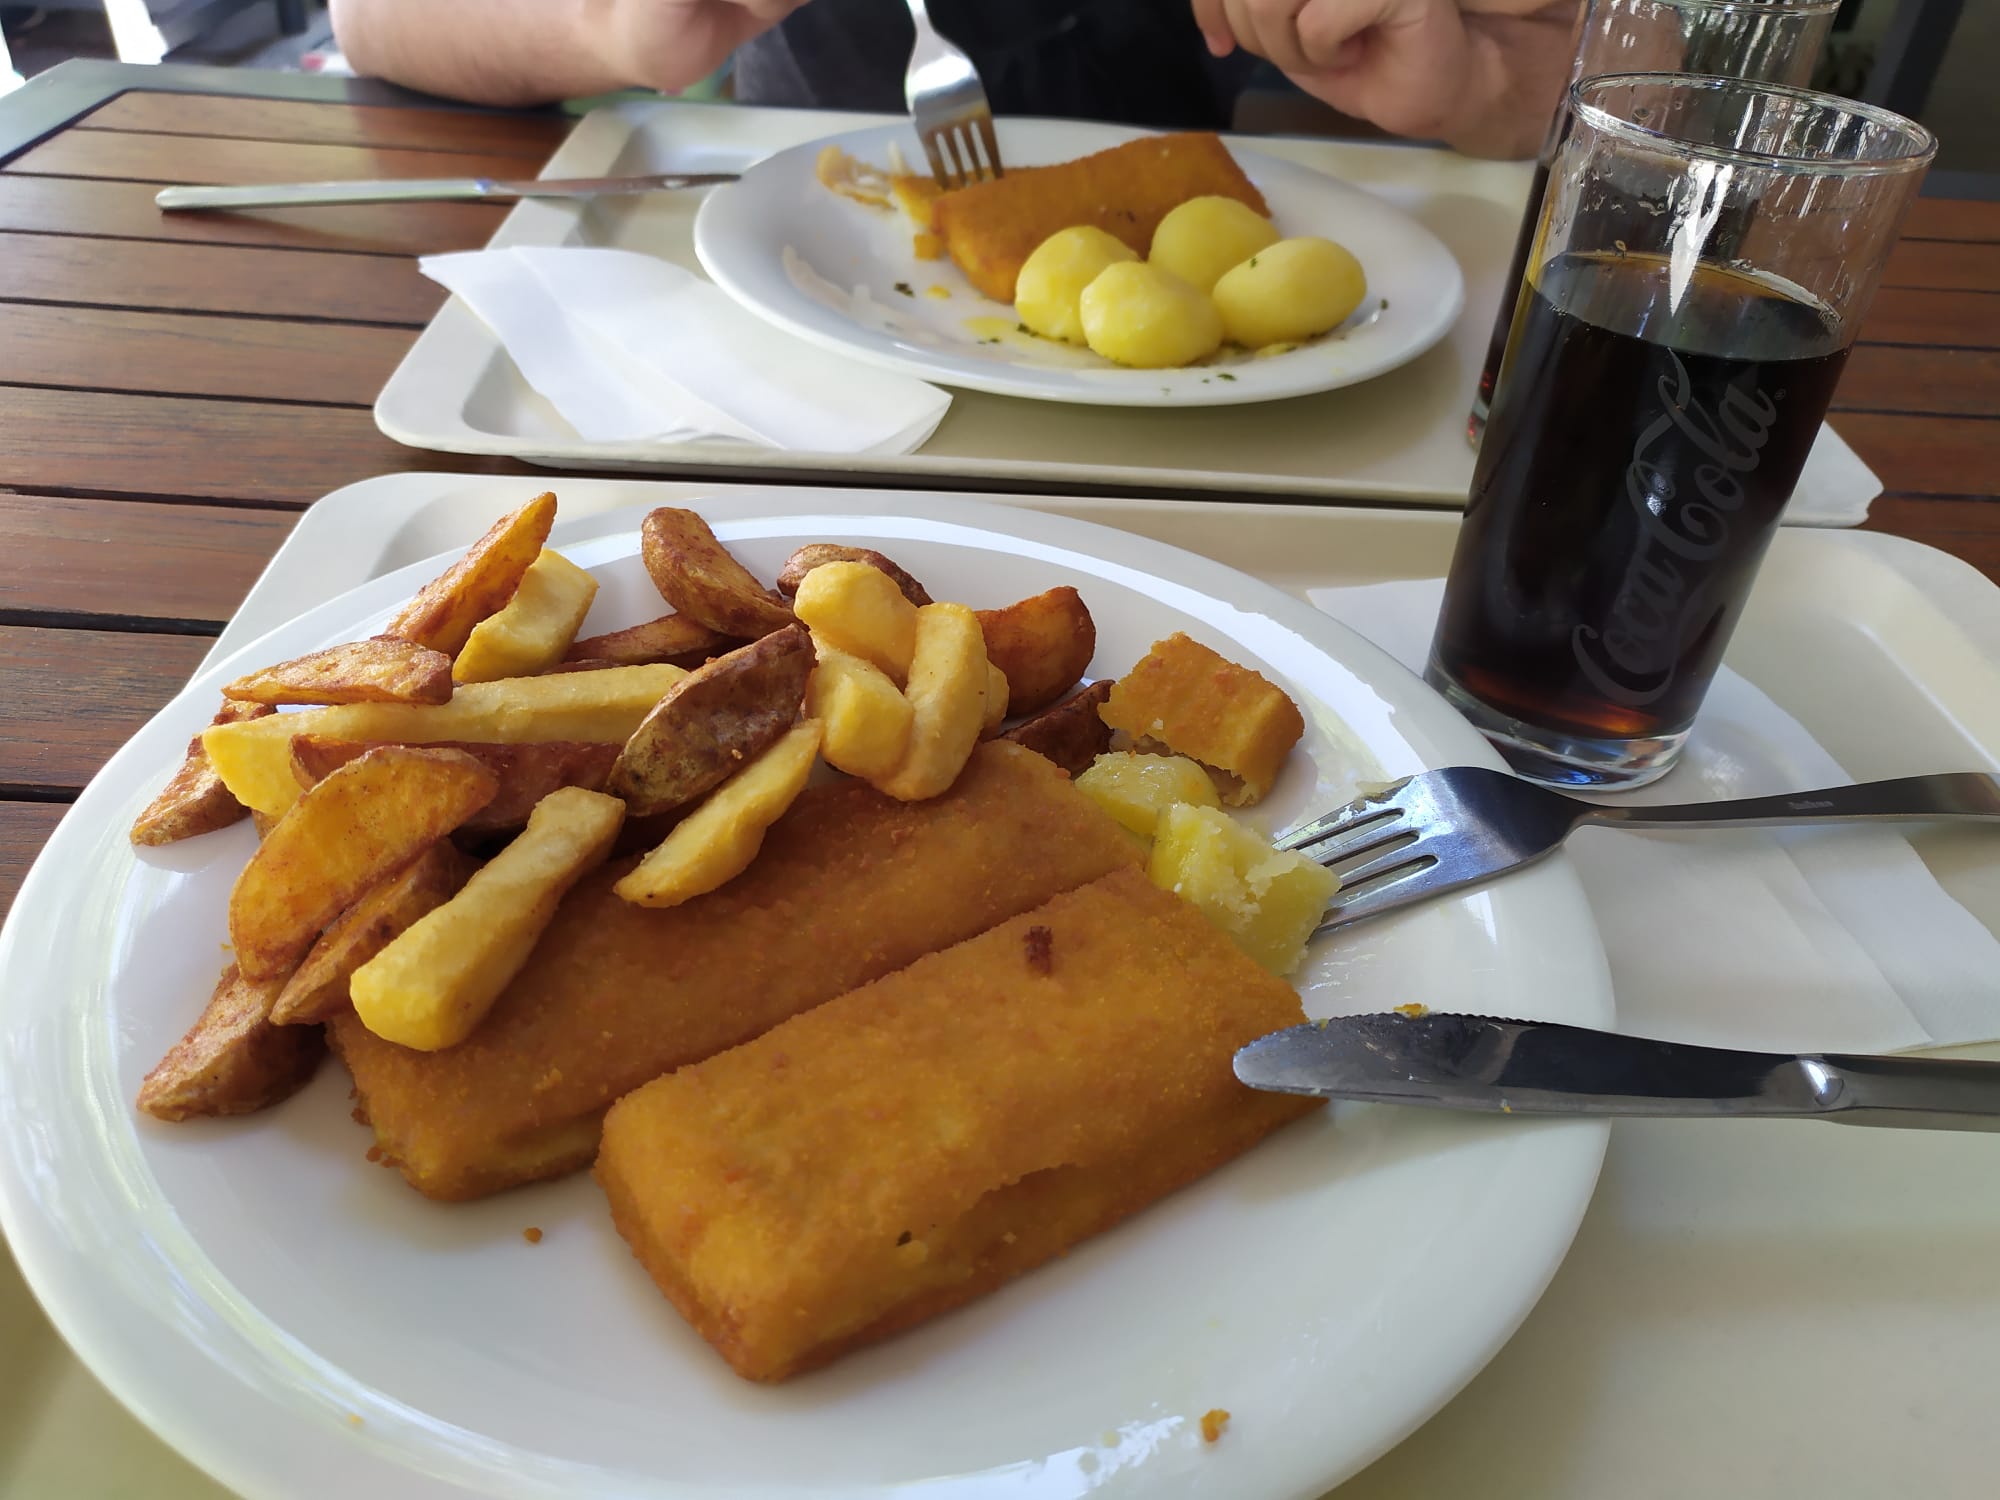 Backfischfilets and Kofola - Il nostro pranzo al Nordsee di Dresda